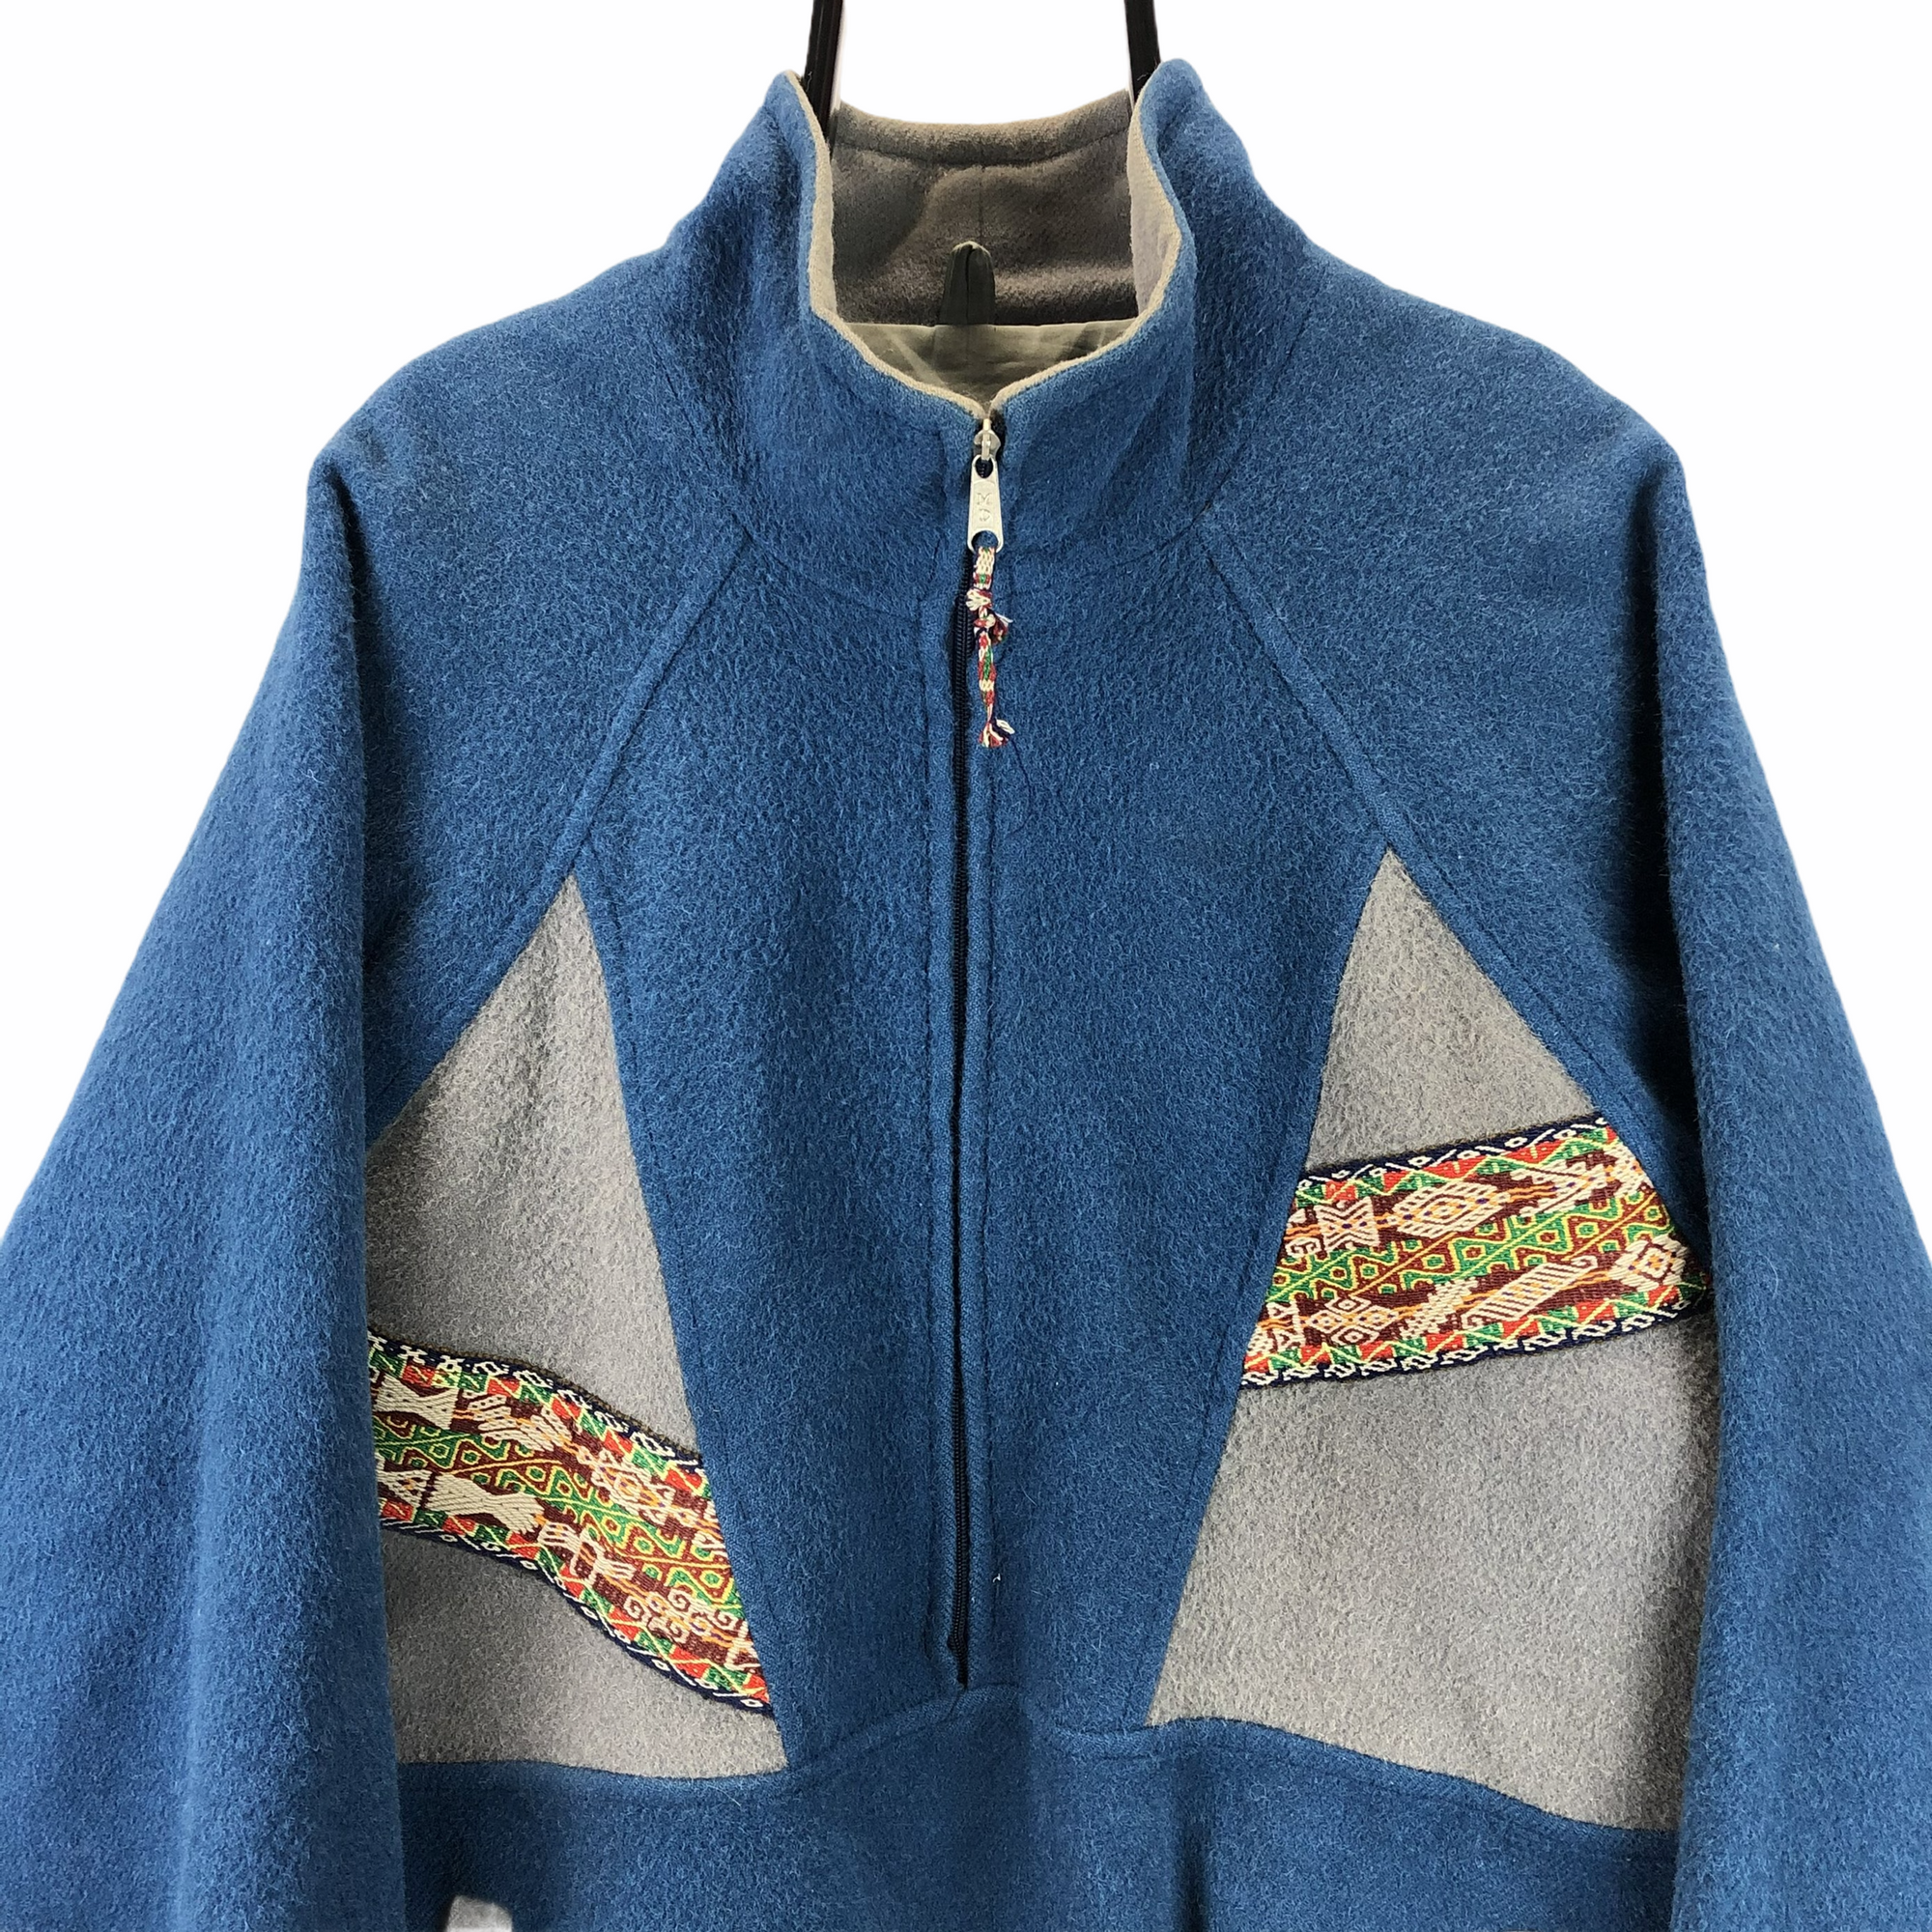 Vintage Lined Half Zip Fleece in Blue/Grey - Men's XL/Women's XXL